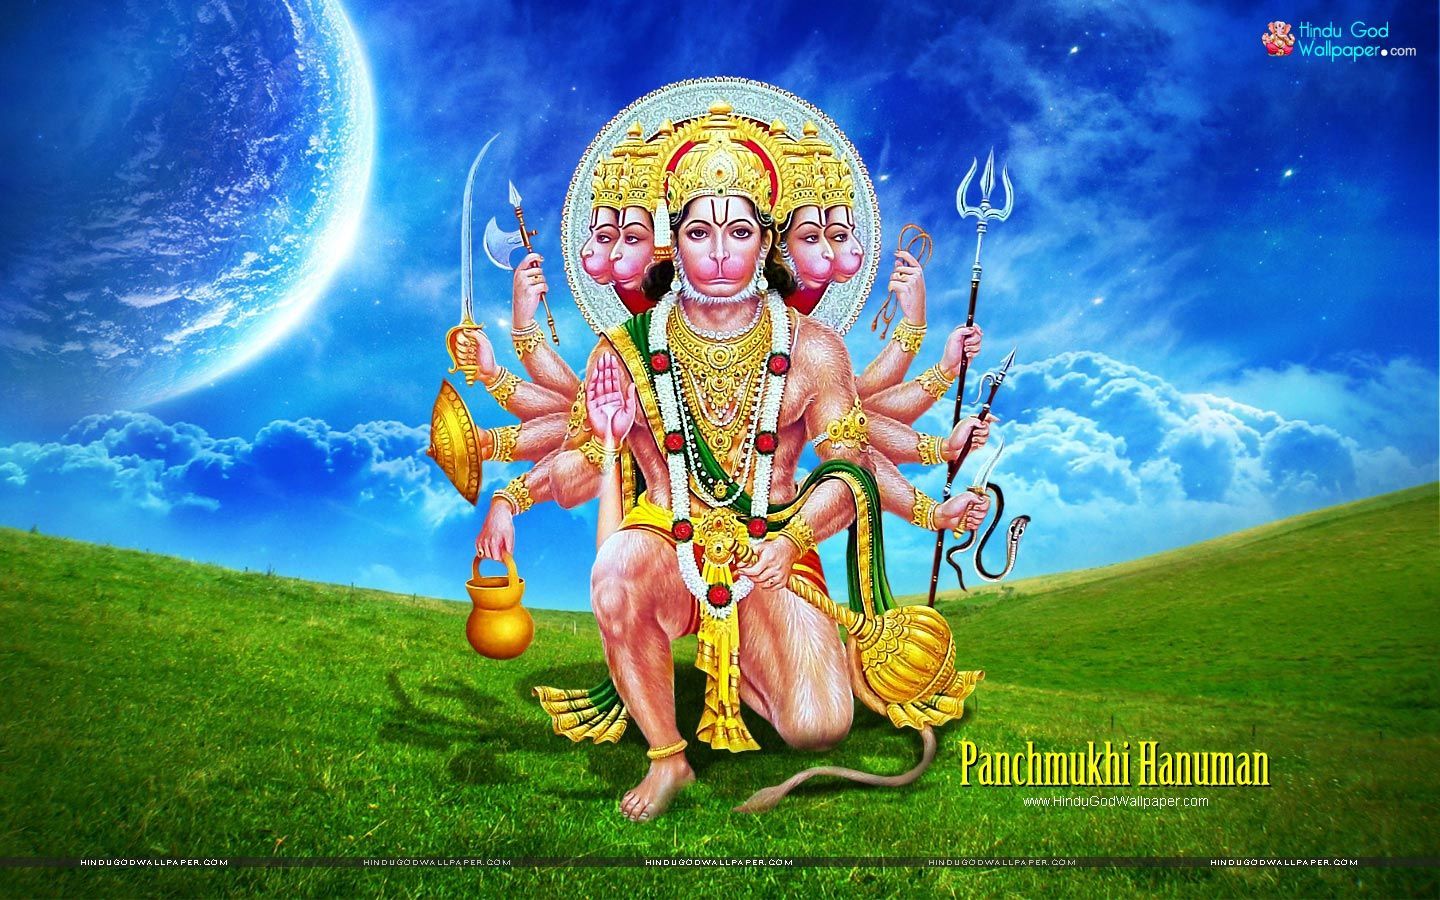 Panchmukhi Hanuman Wallpaper for PC Download. Hanuman wallpaper